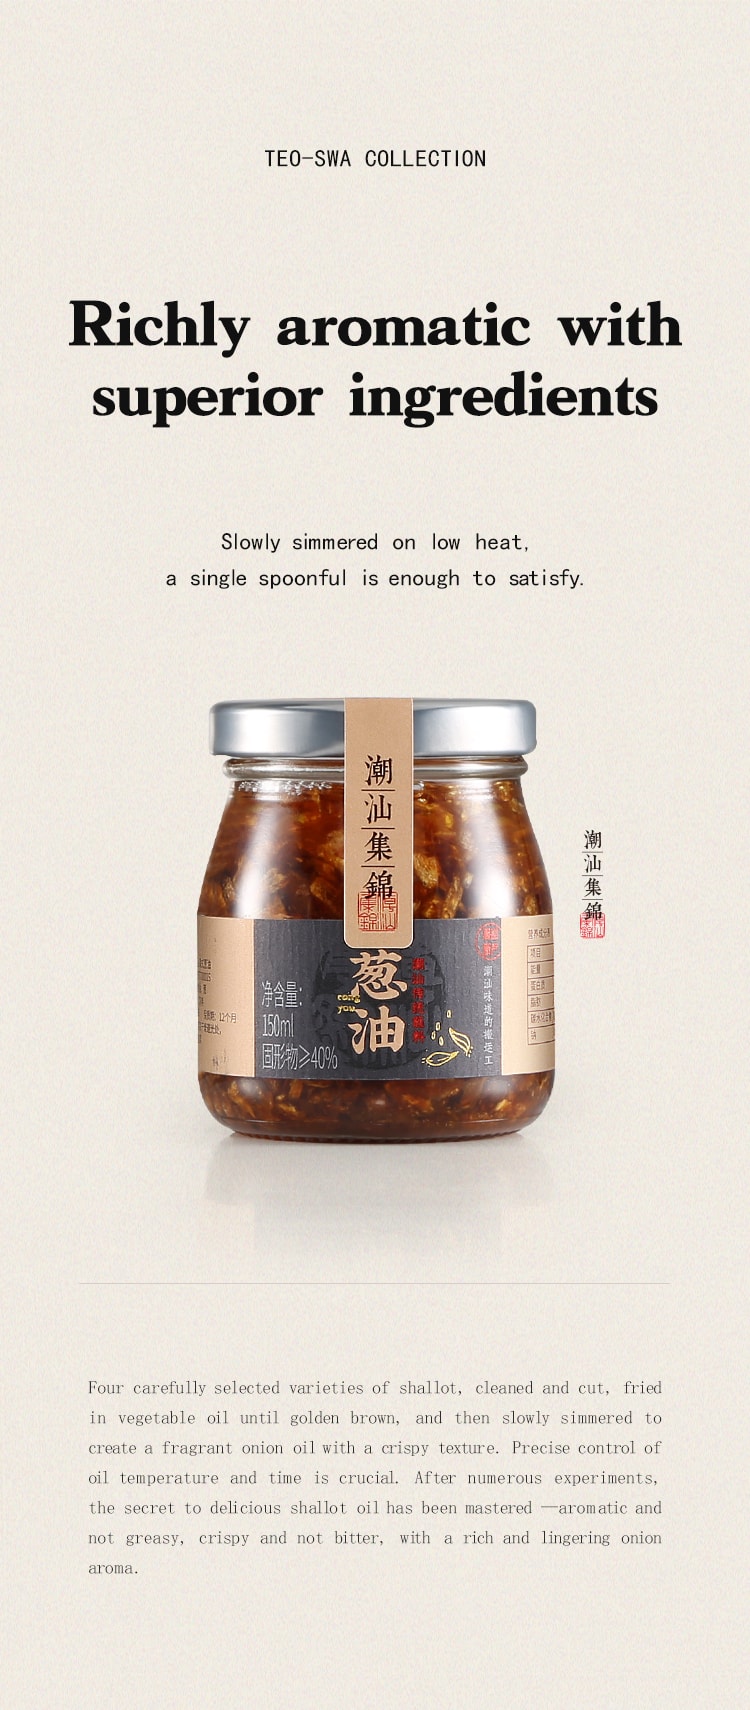 中國潮汕集錦 6件套裝 蒜頭油 蔥油 蒜頭酥 家用調味品 750克